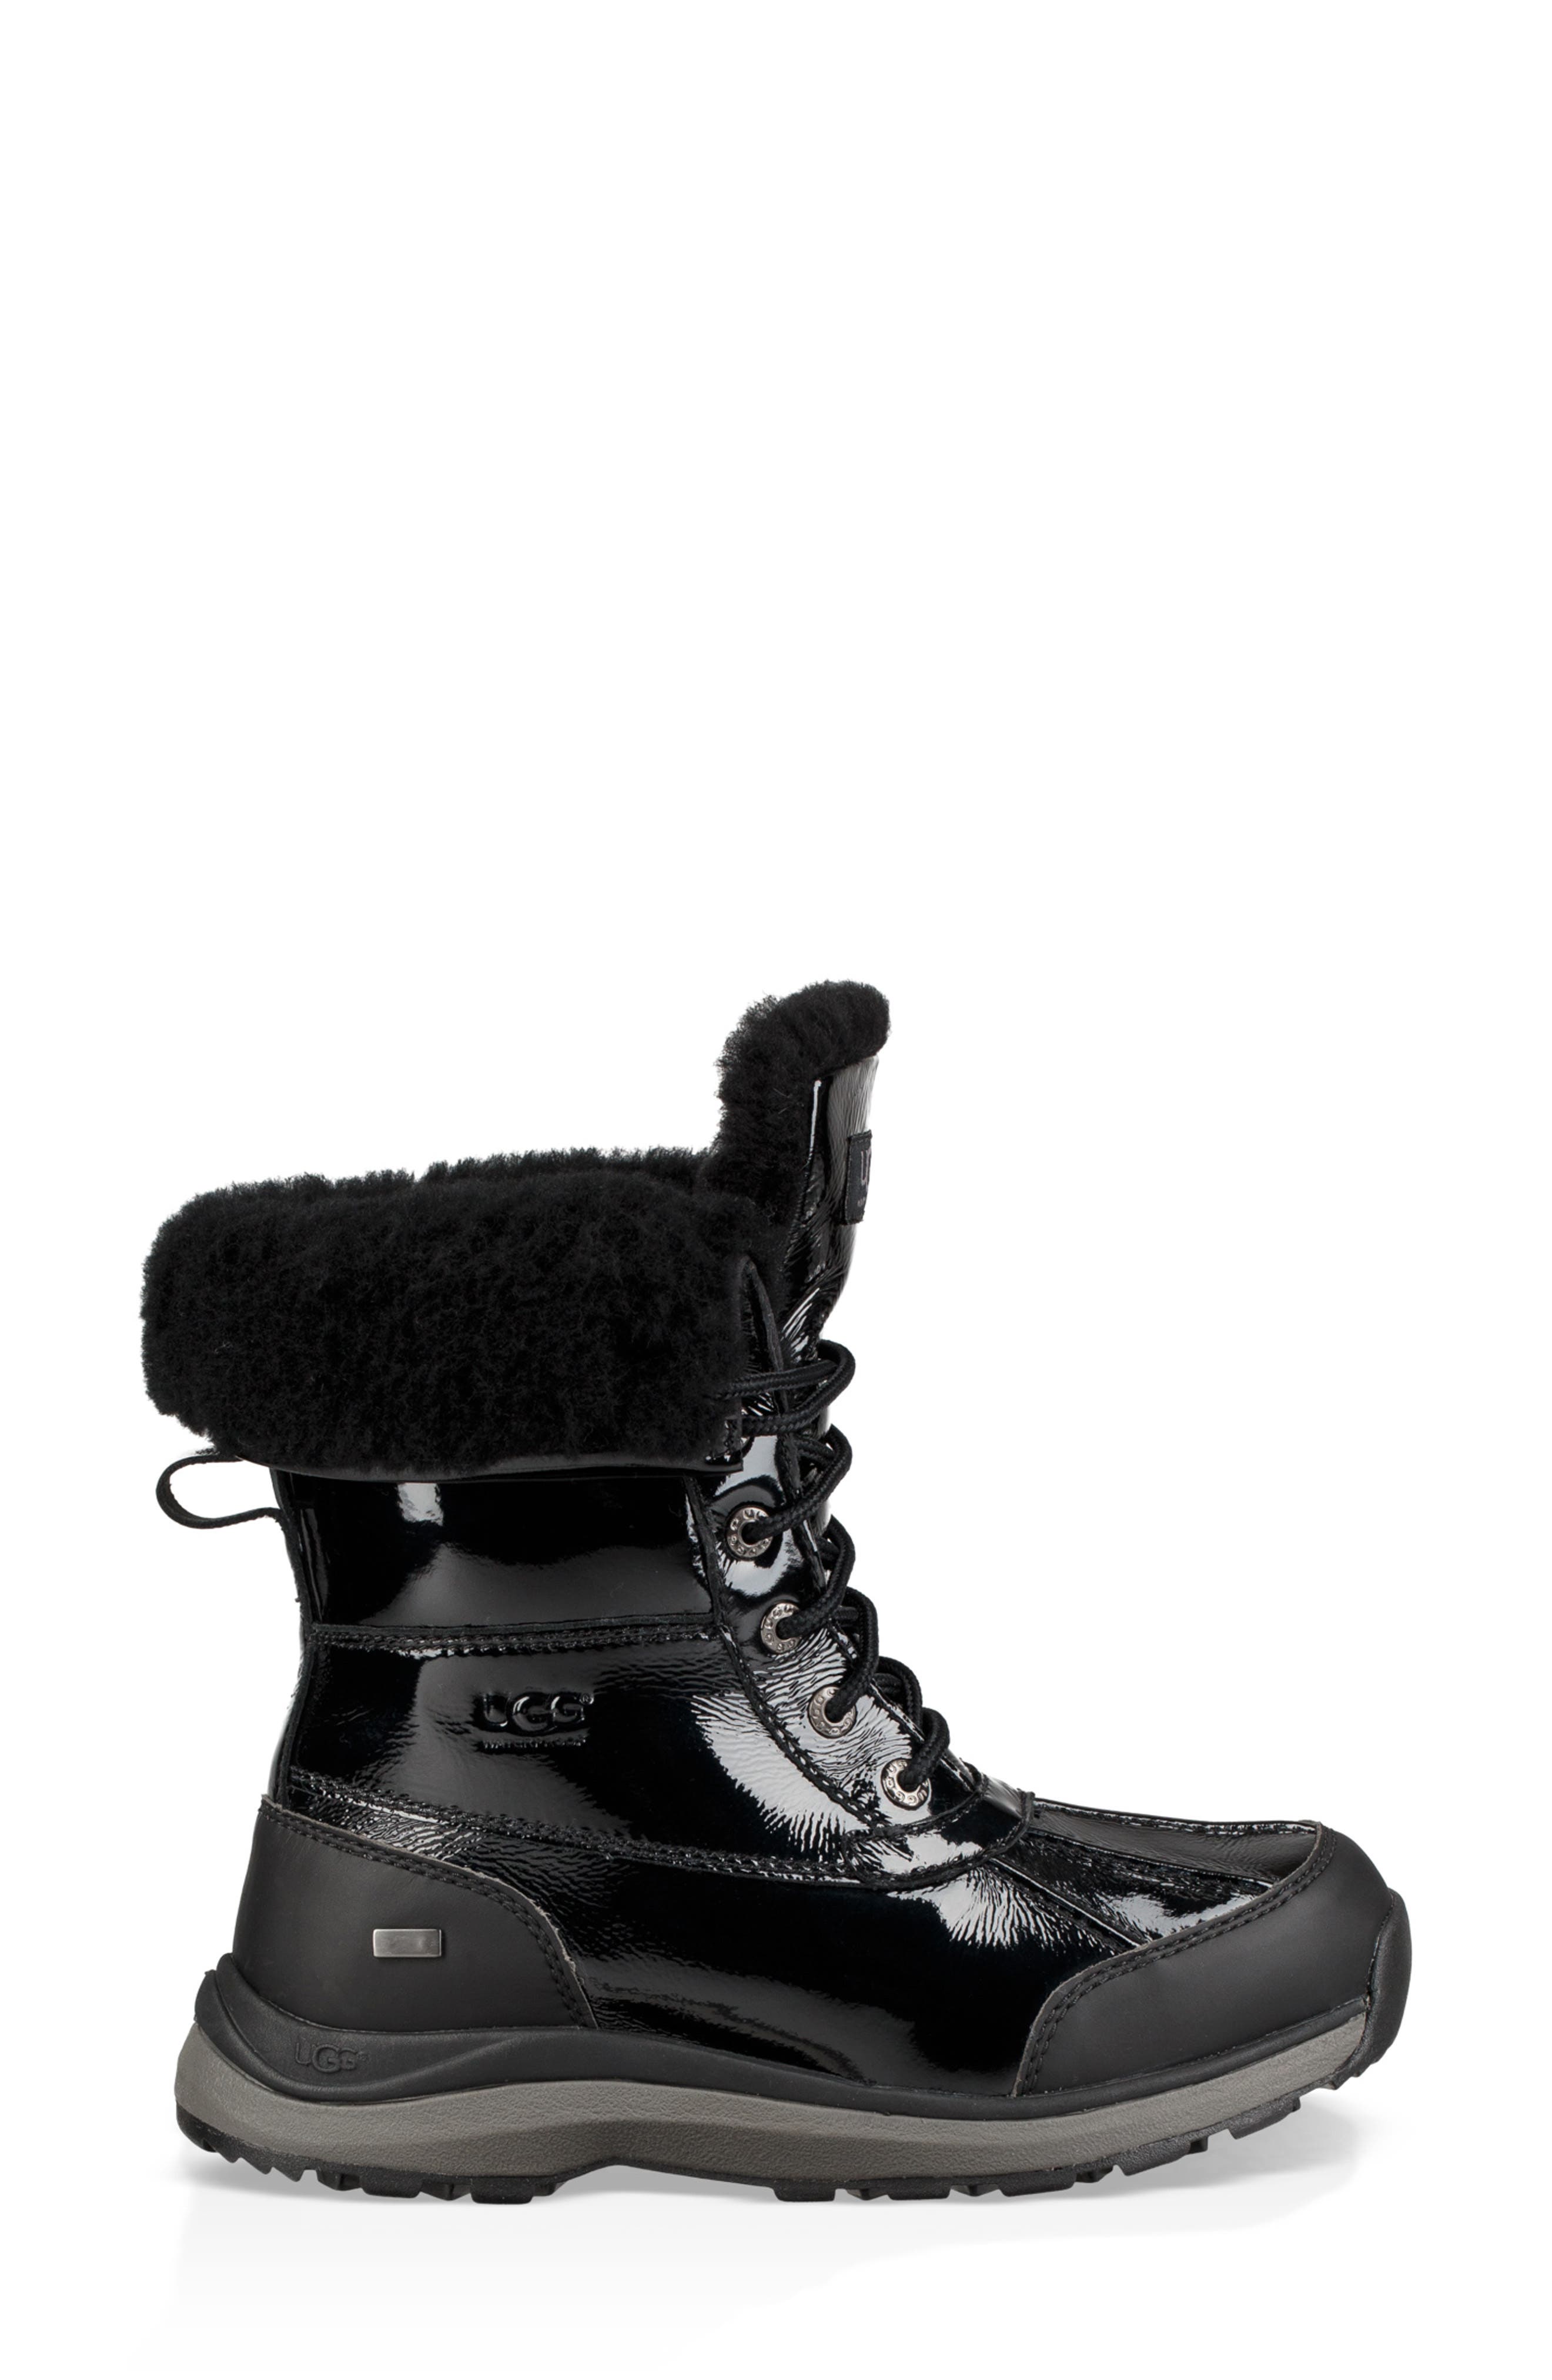 adirondack iii waterproof insulated patent winter boot